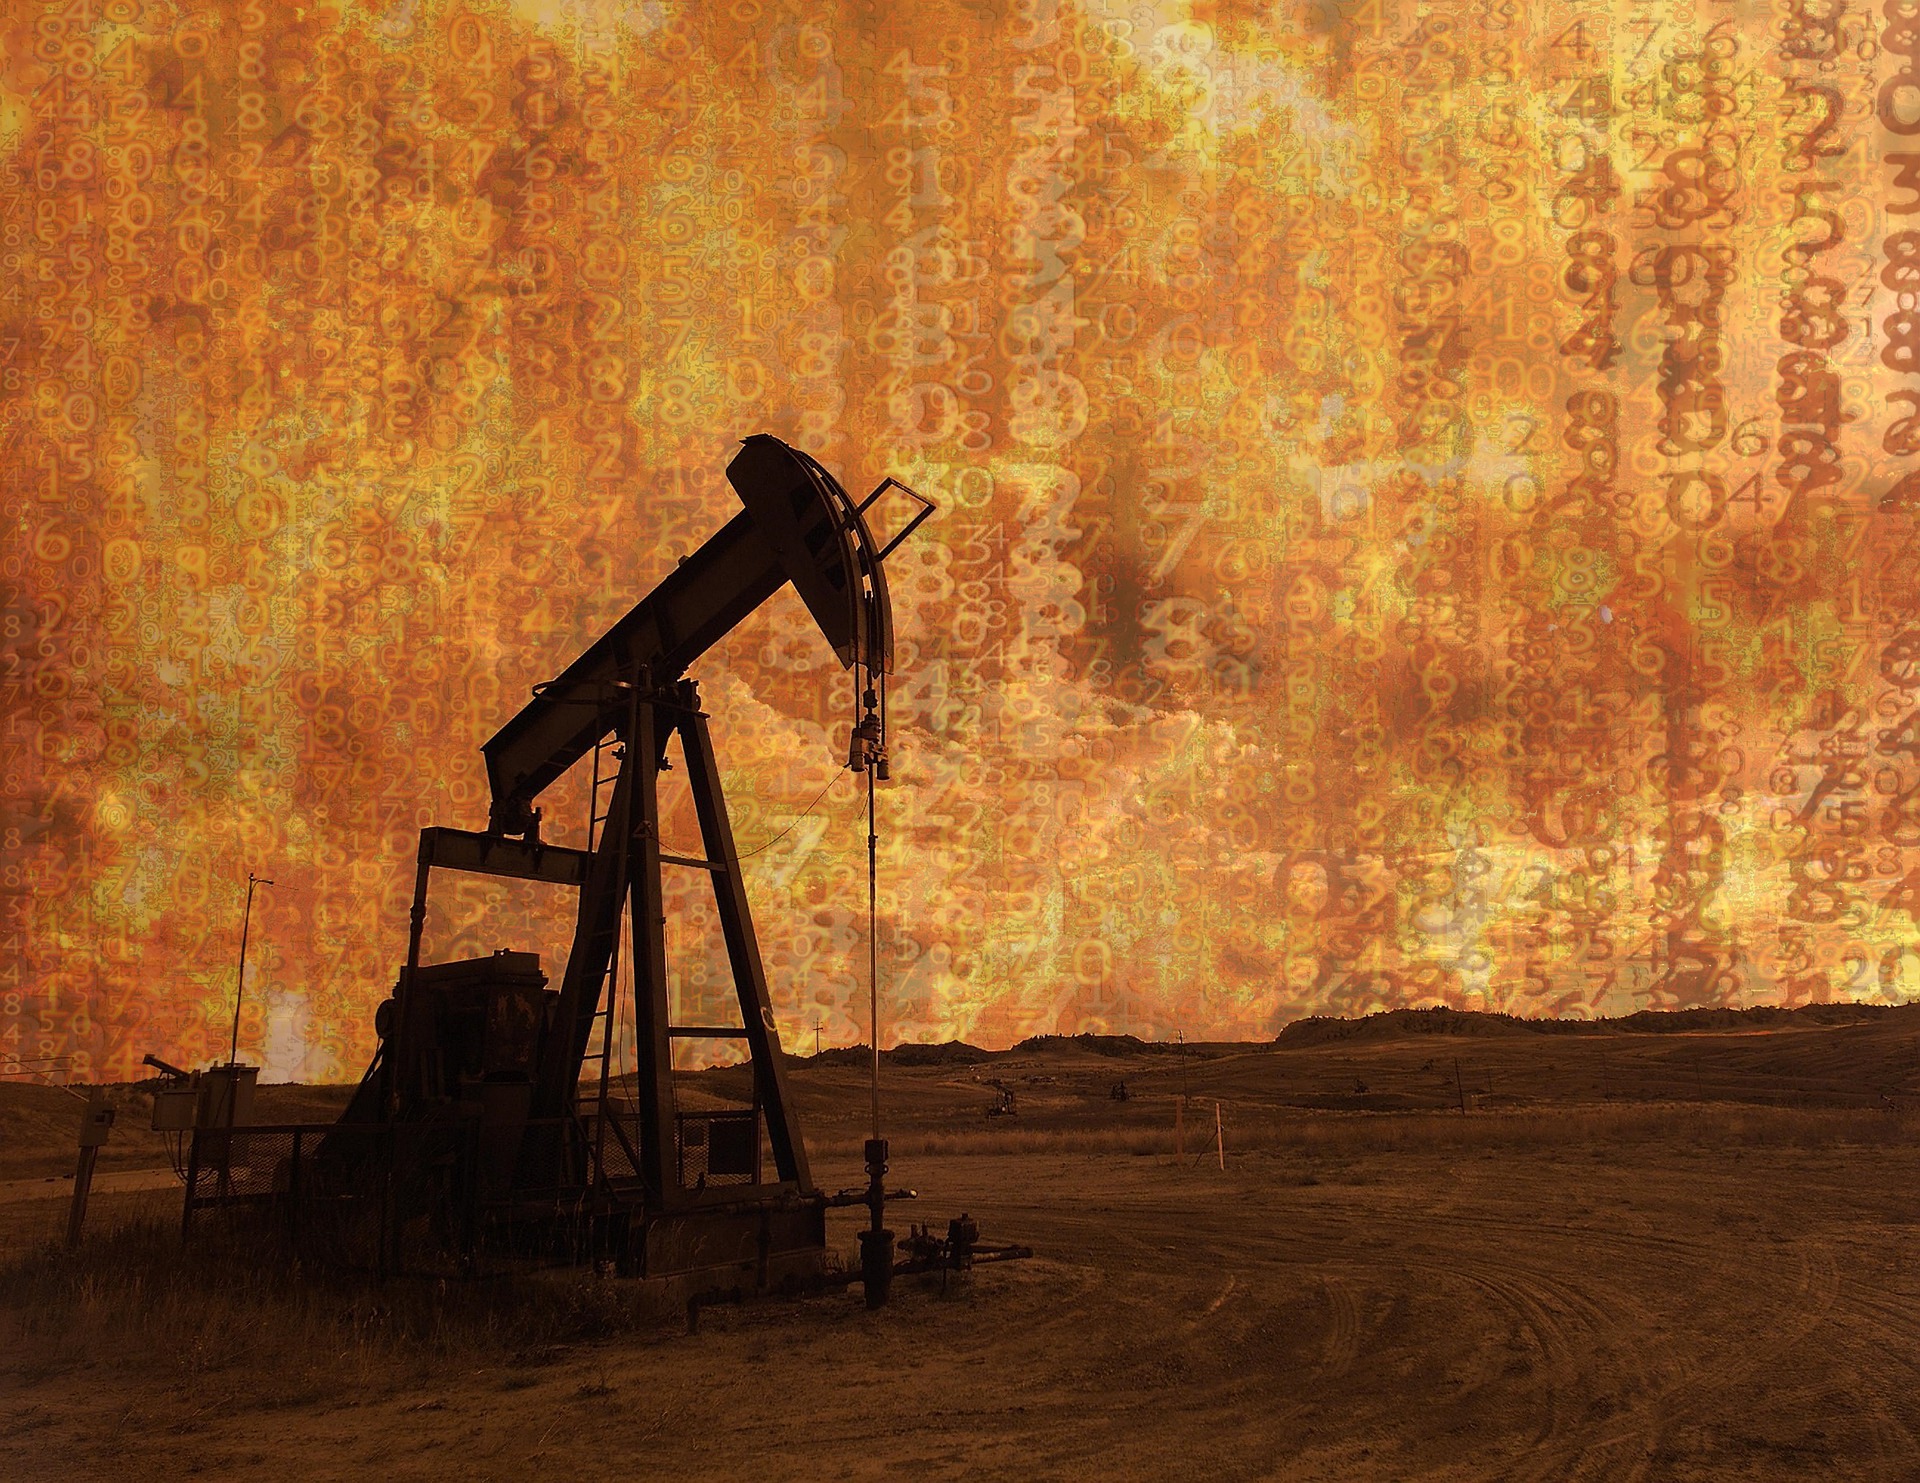 Πετρέλαιο: Η ανάφλεξη στη Μέση Ανατολή βάζει φωτιά στις τιμές